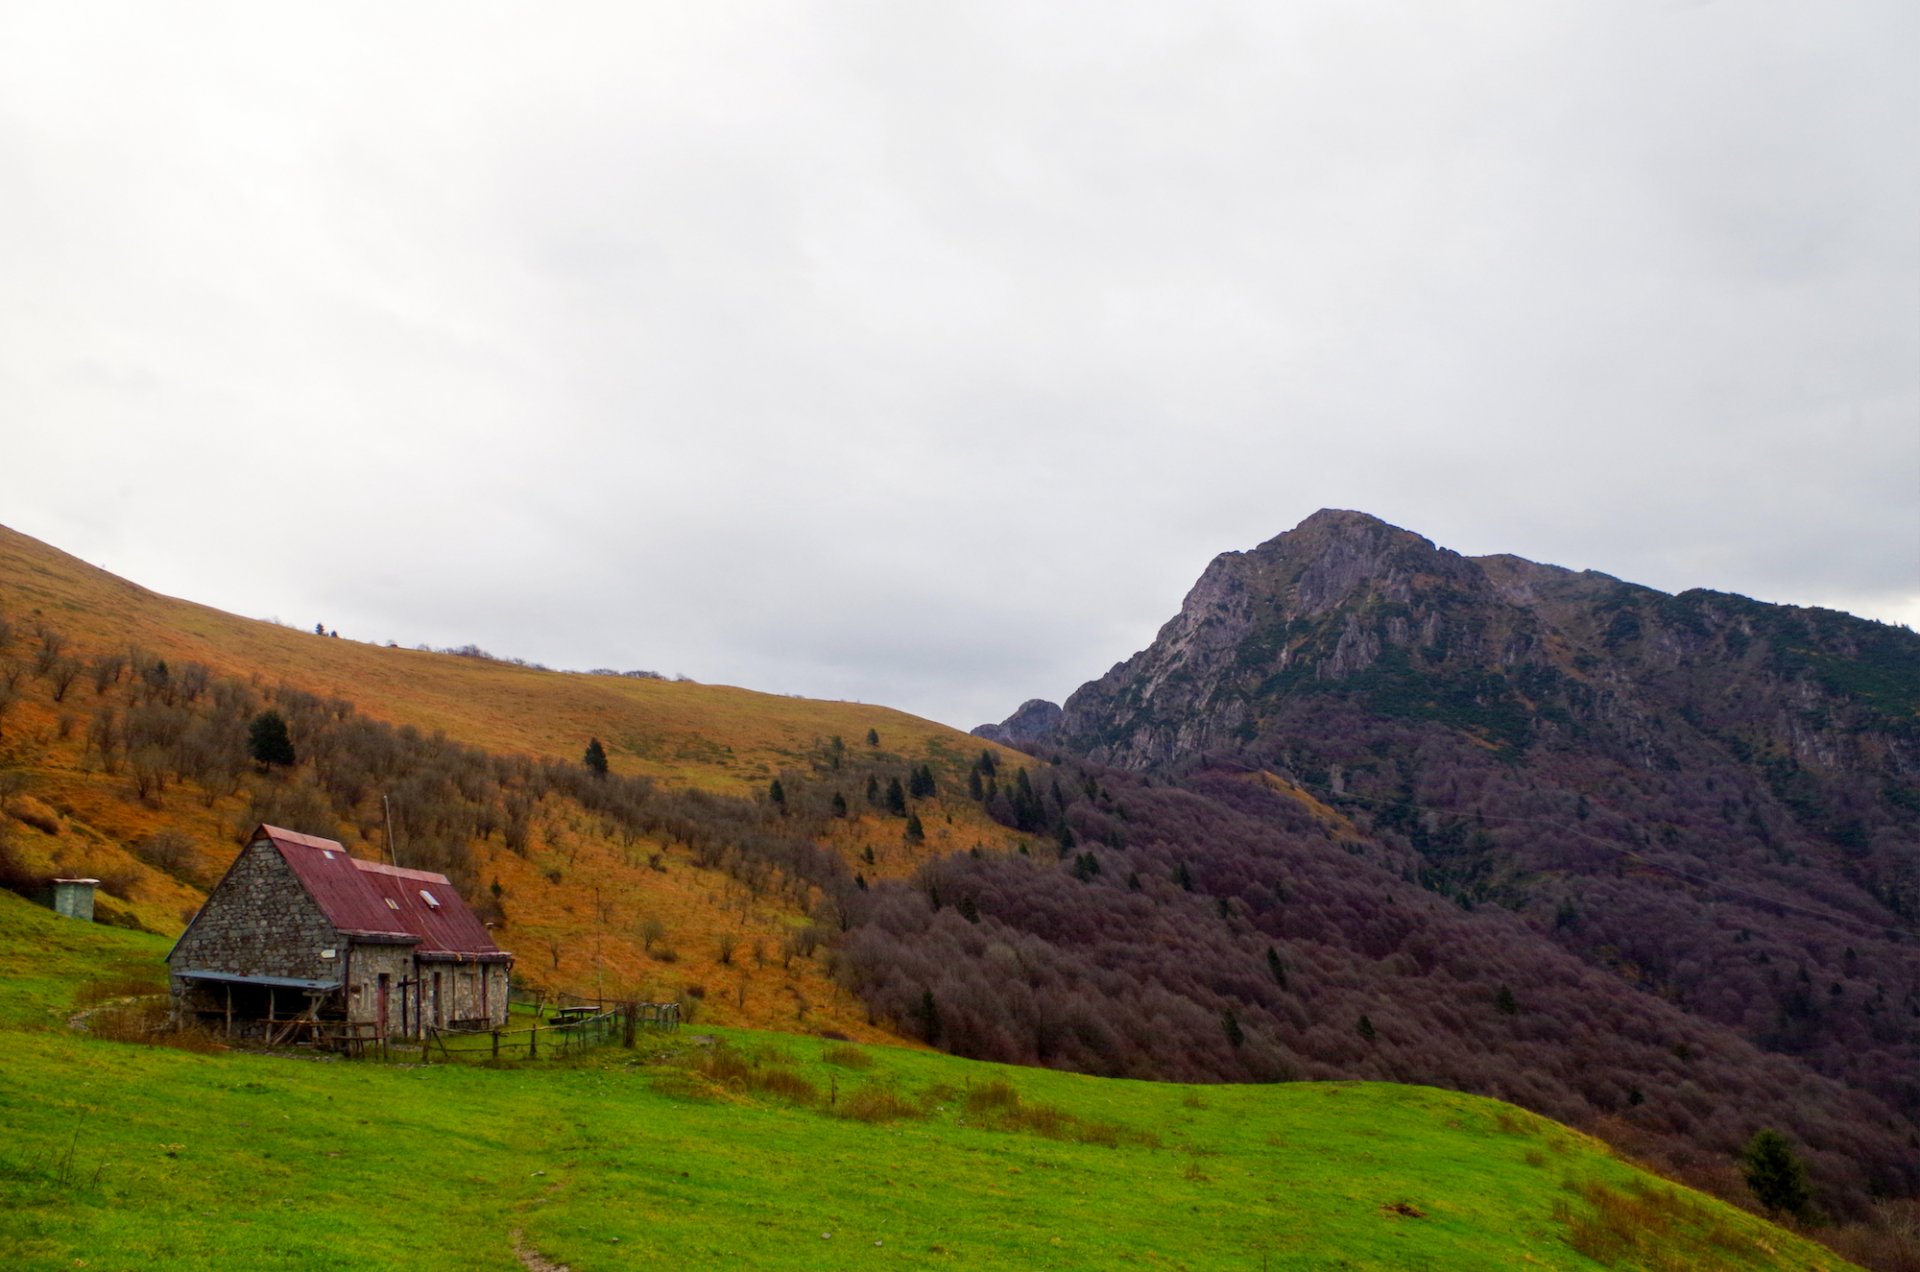 1 - La val Taleggio in autunno, sullo sfondo il monte Venturosa